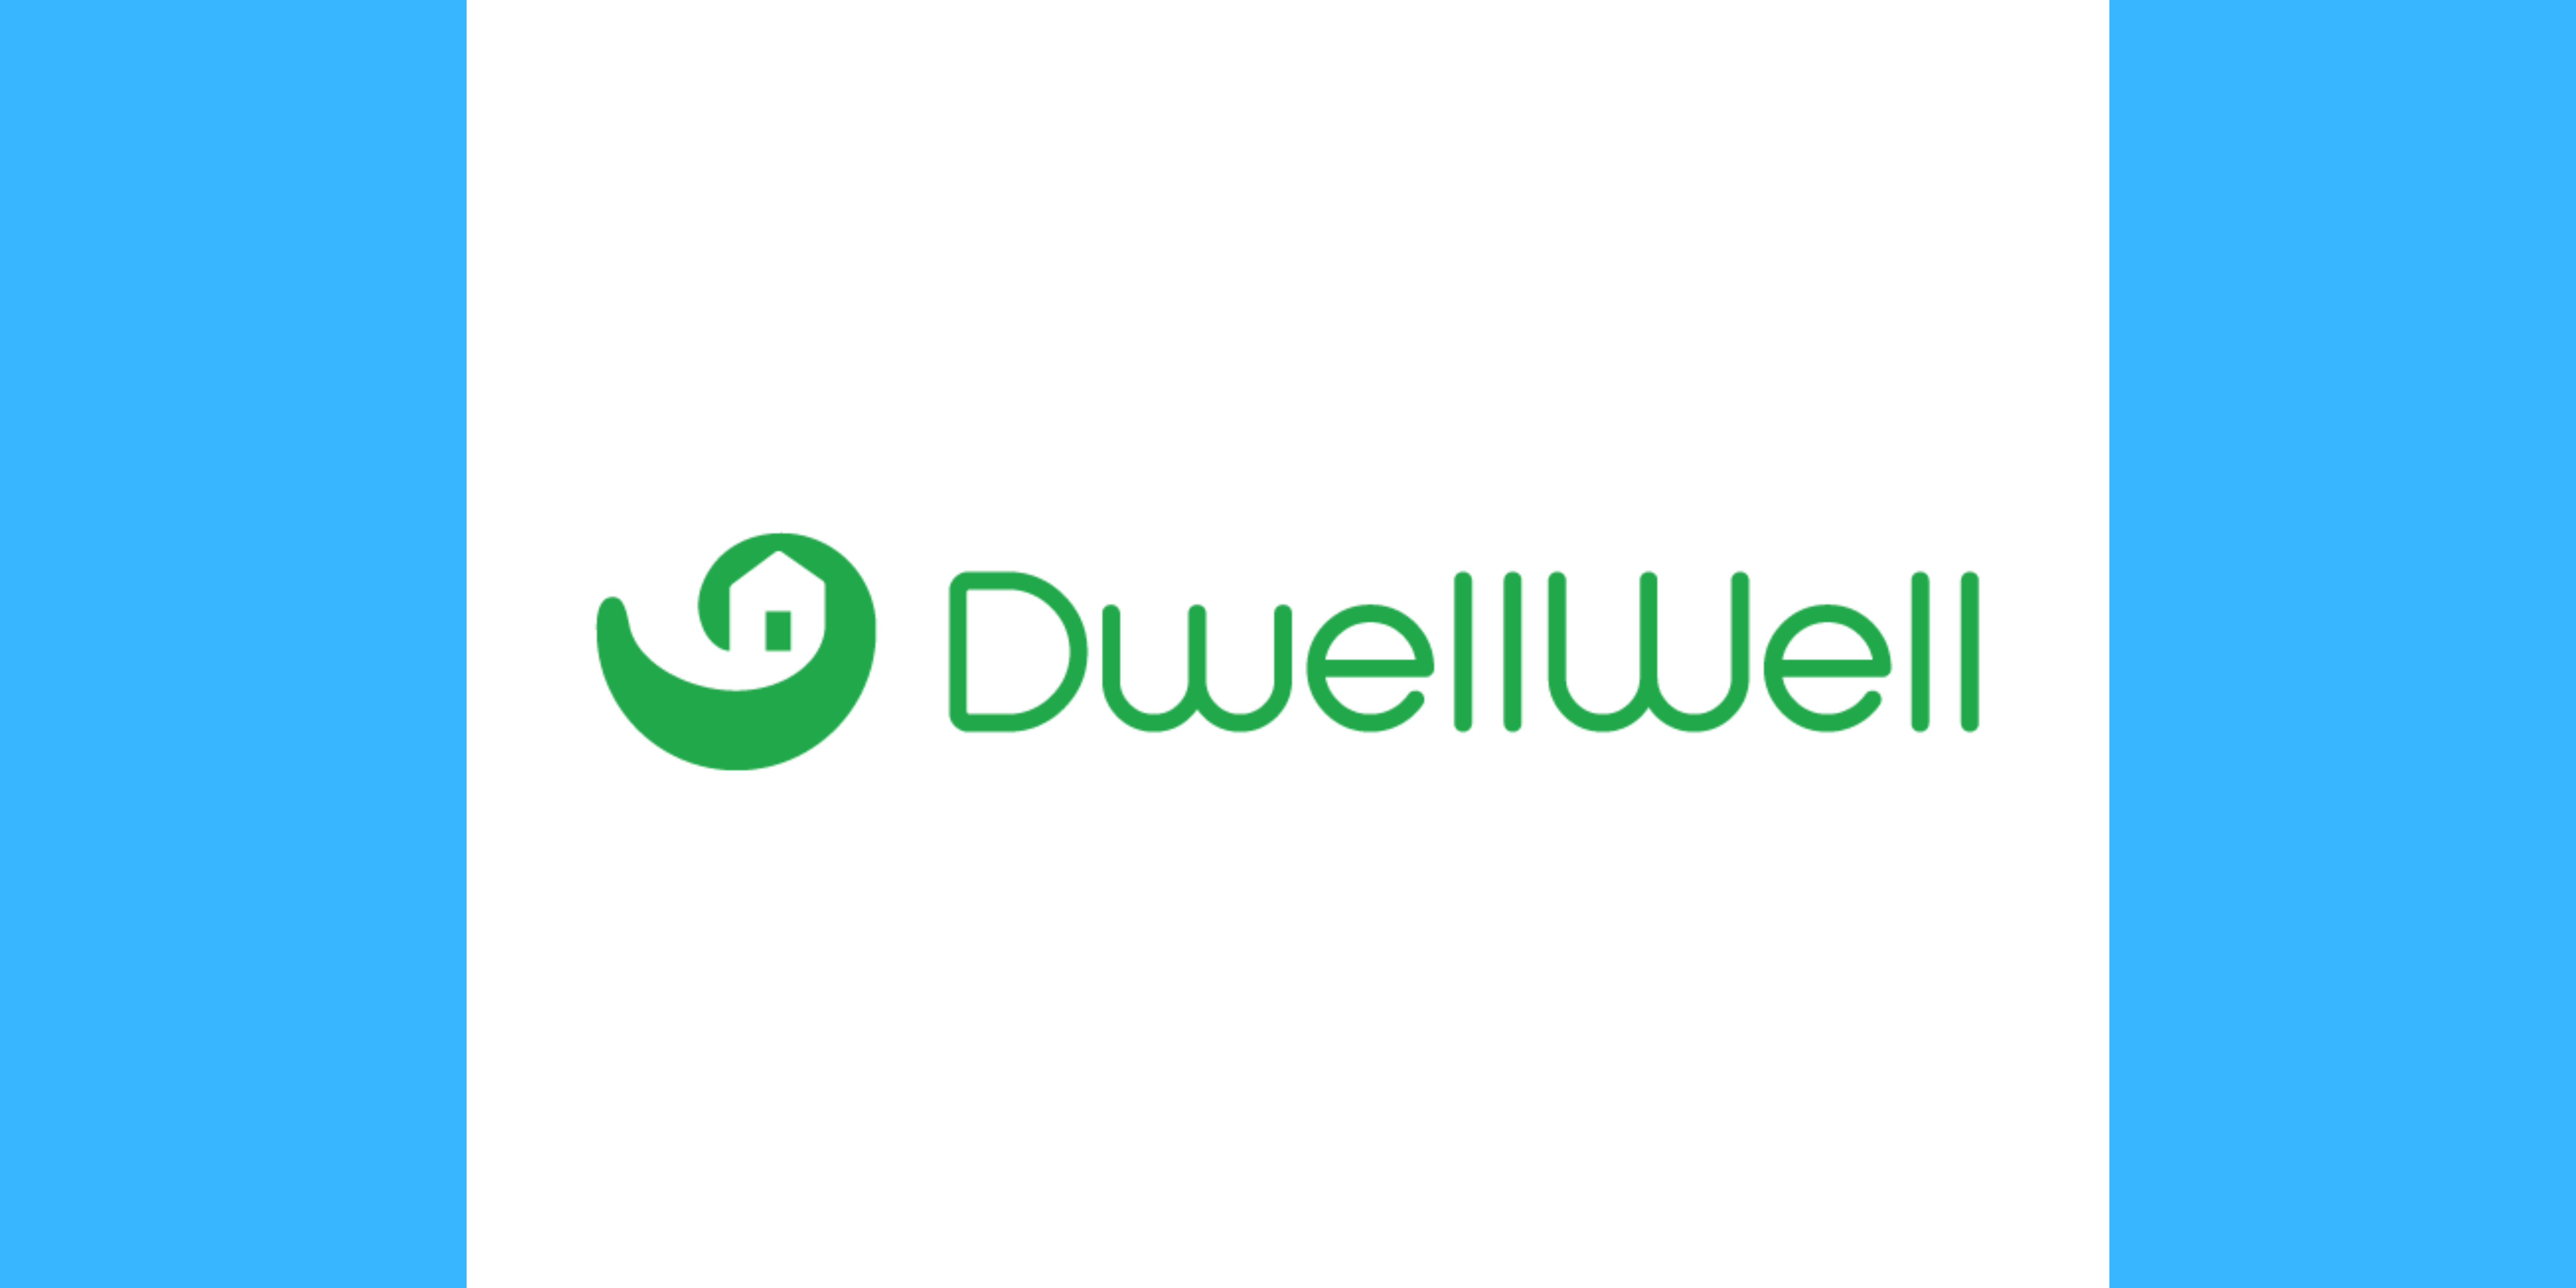 DwellWell Launches Homebuyer AI “Dwelly”